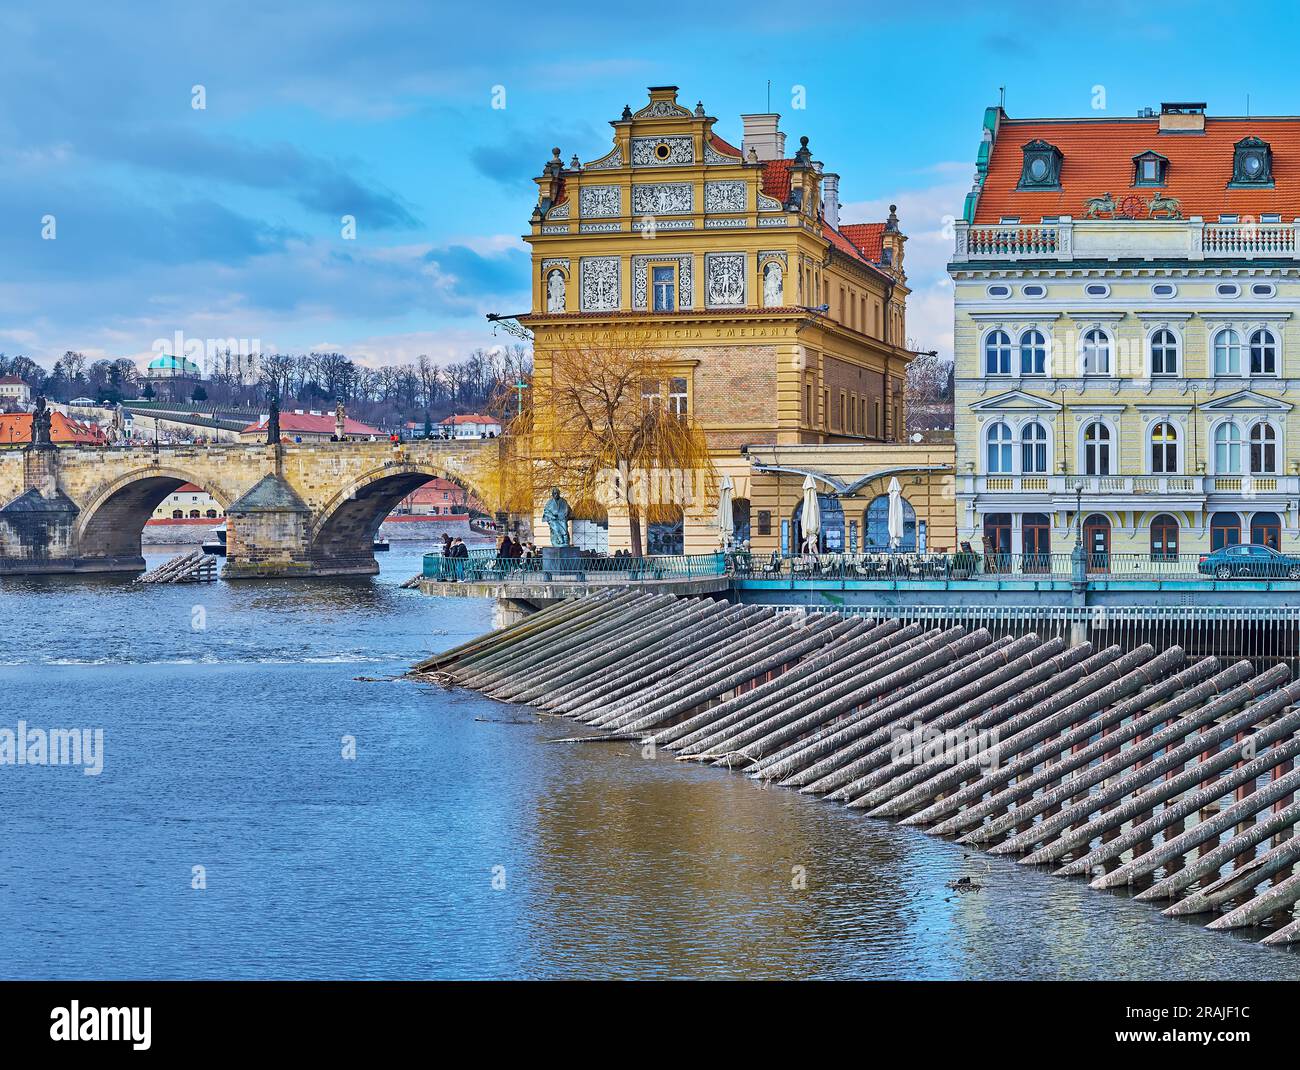 La dimora storica riccamente decorata del Museo Bedrich Smetana, situata sul lungofiume della Moldava adiacente al Ponte Carlo, Praga, Cechia Foto Stock